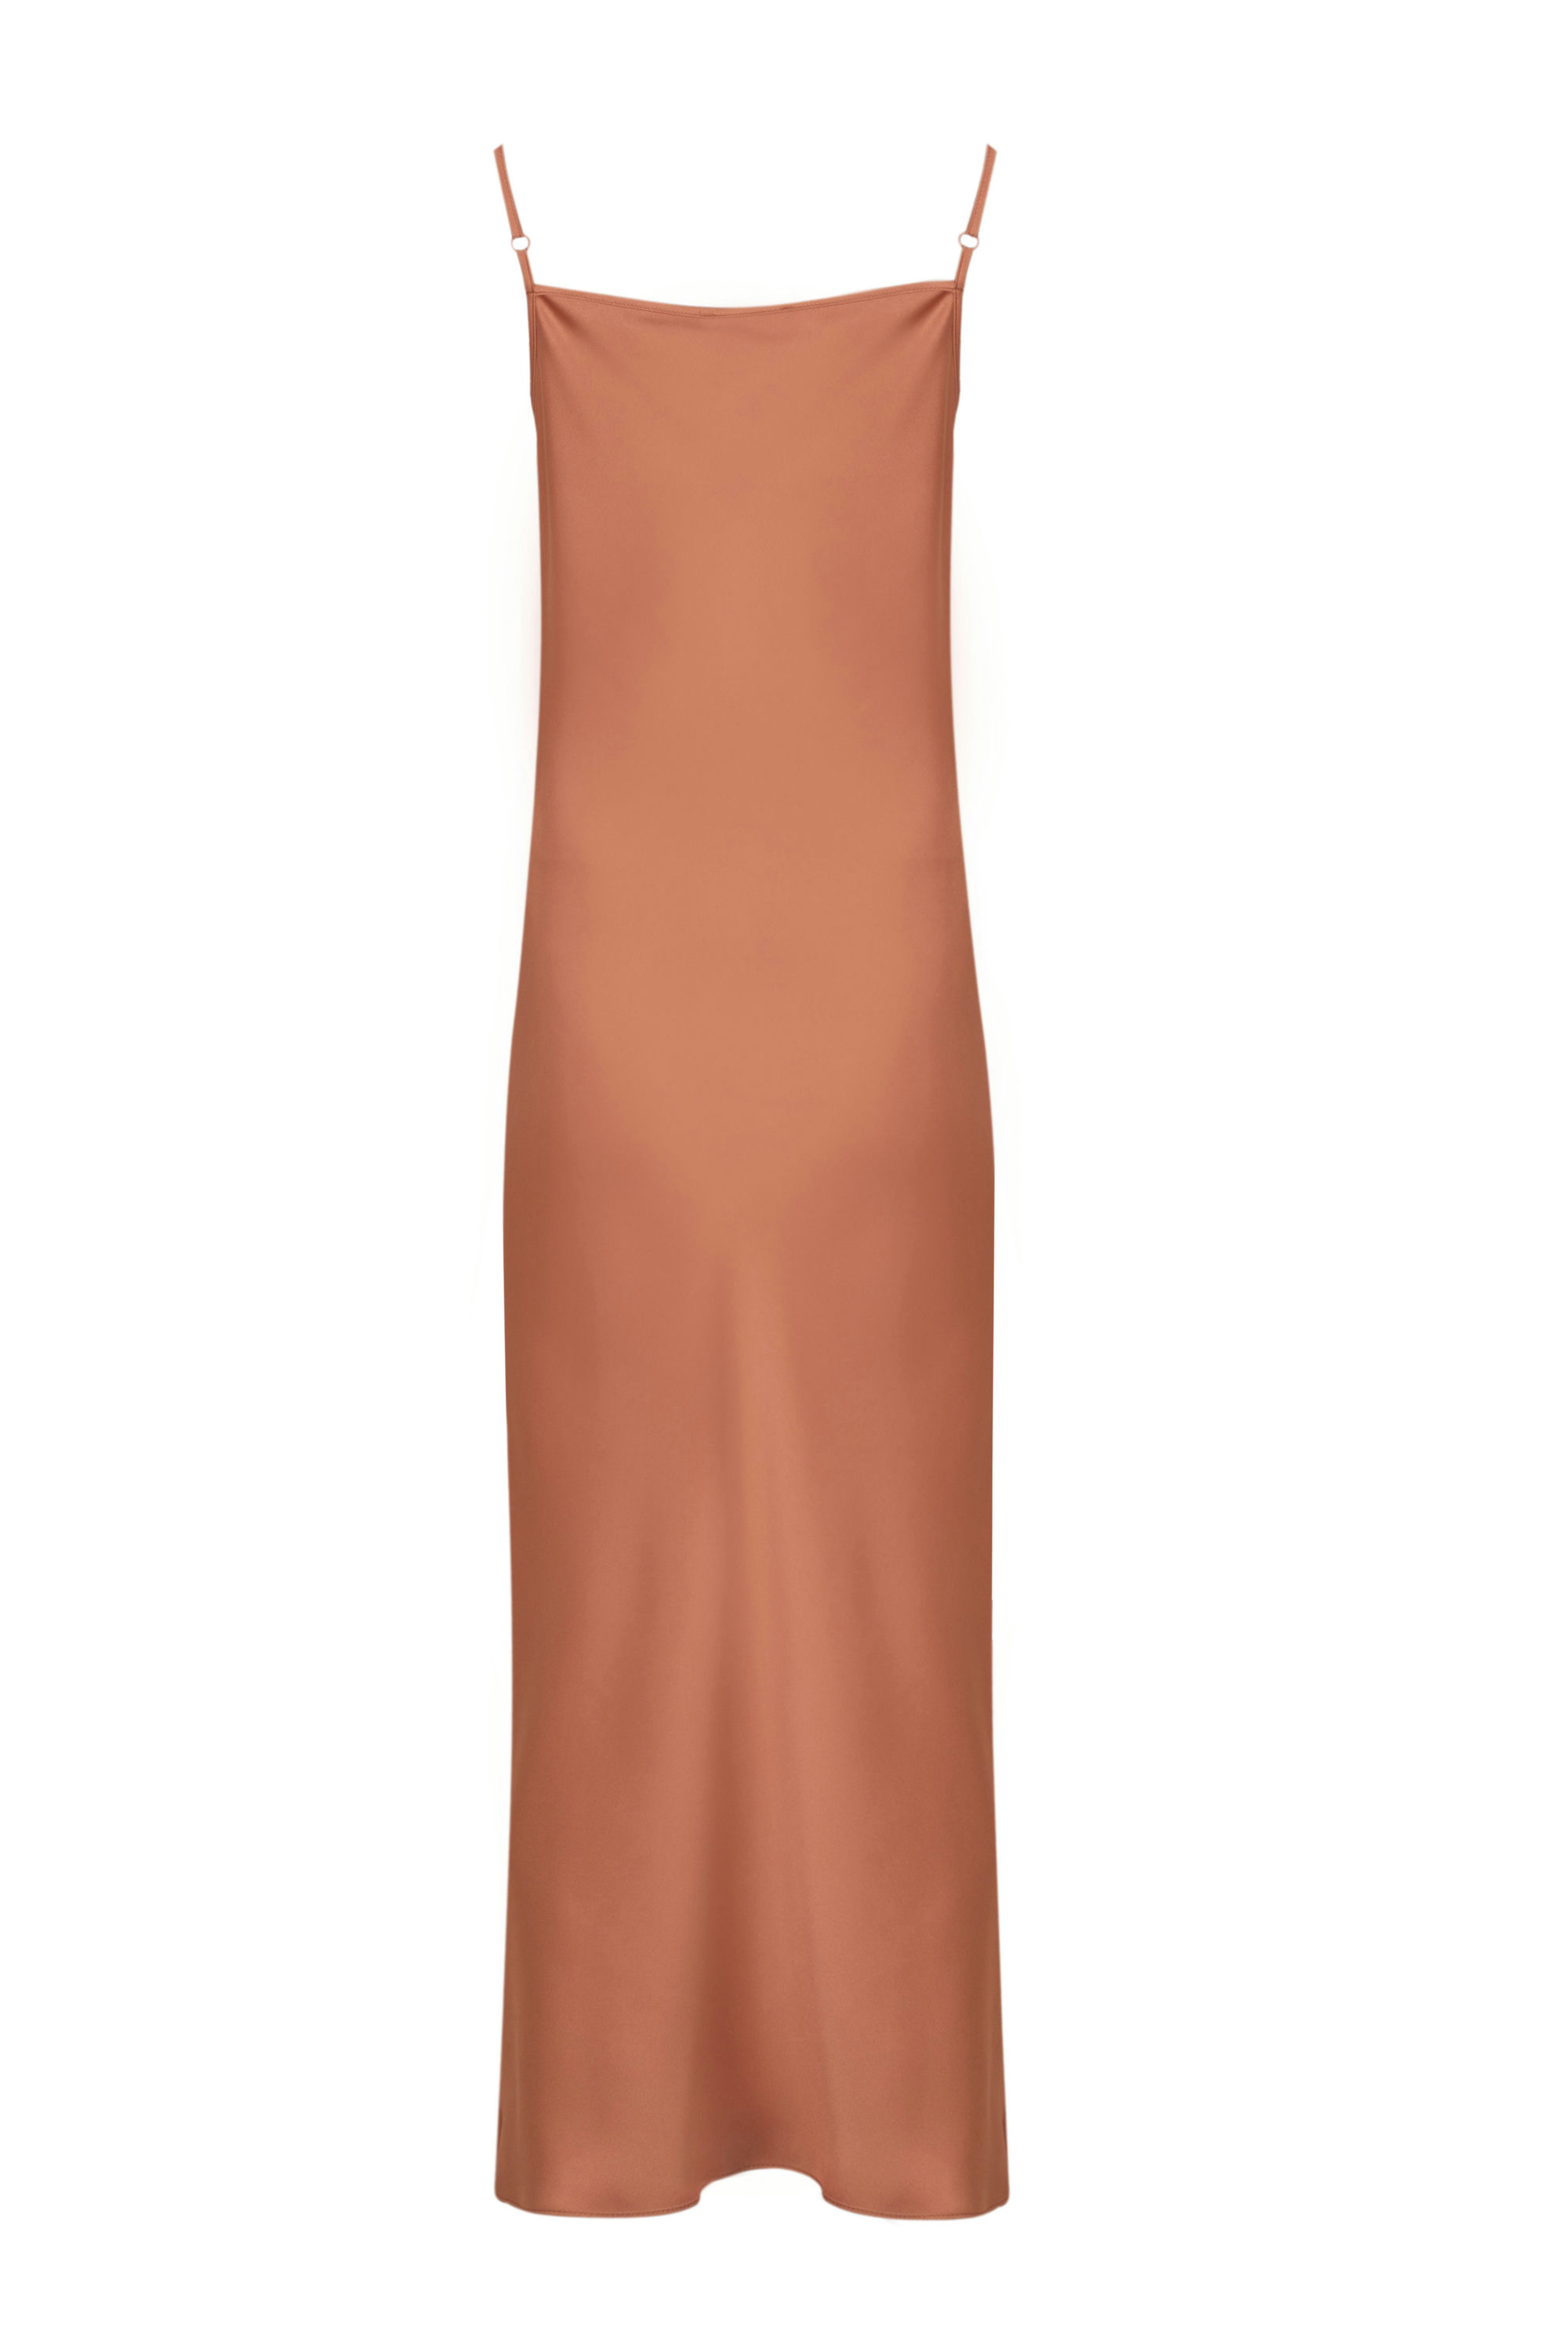 Платье женское 5К-13082-2